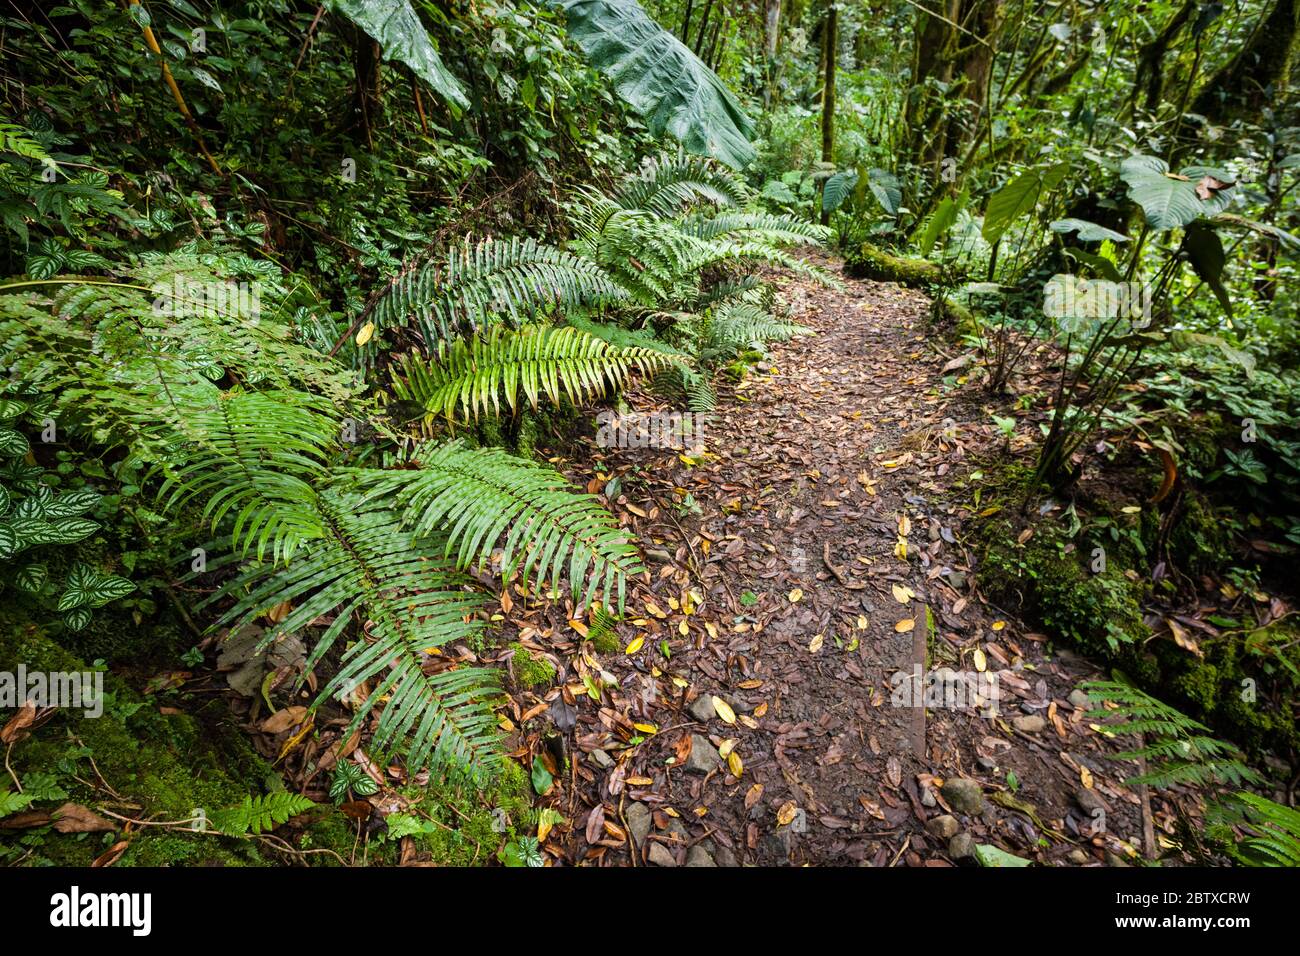 Végétation luxuriante et sentier de randonnée dans le sous-étage de la forêt tropicale du parc national de la Amistad, province de Chiriqui, République du Panama. Banque D'Images